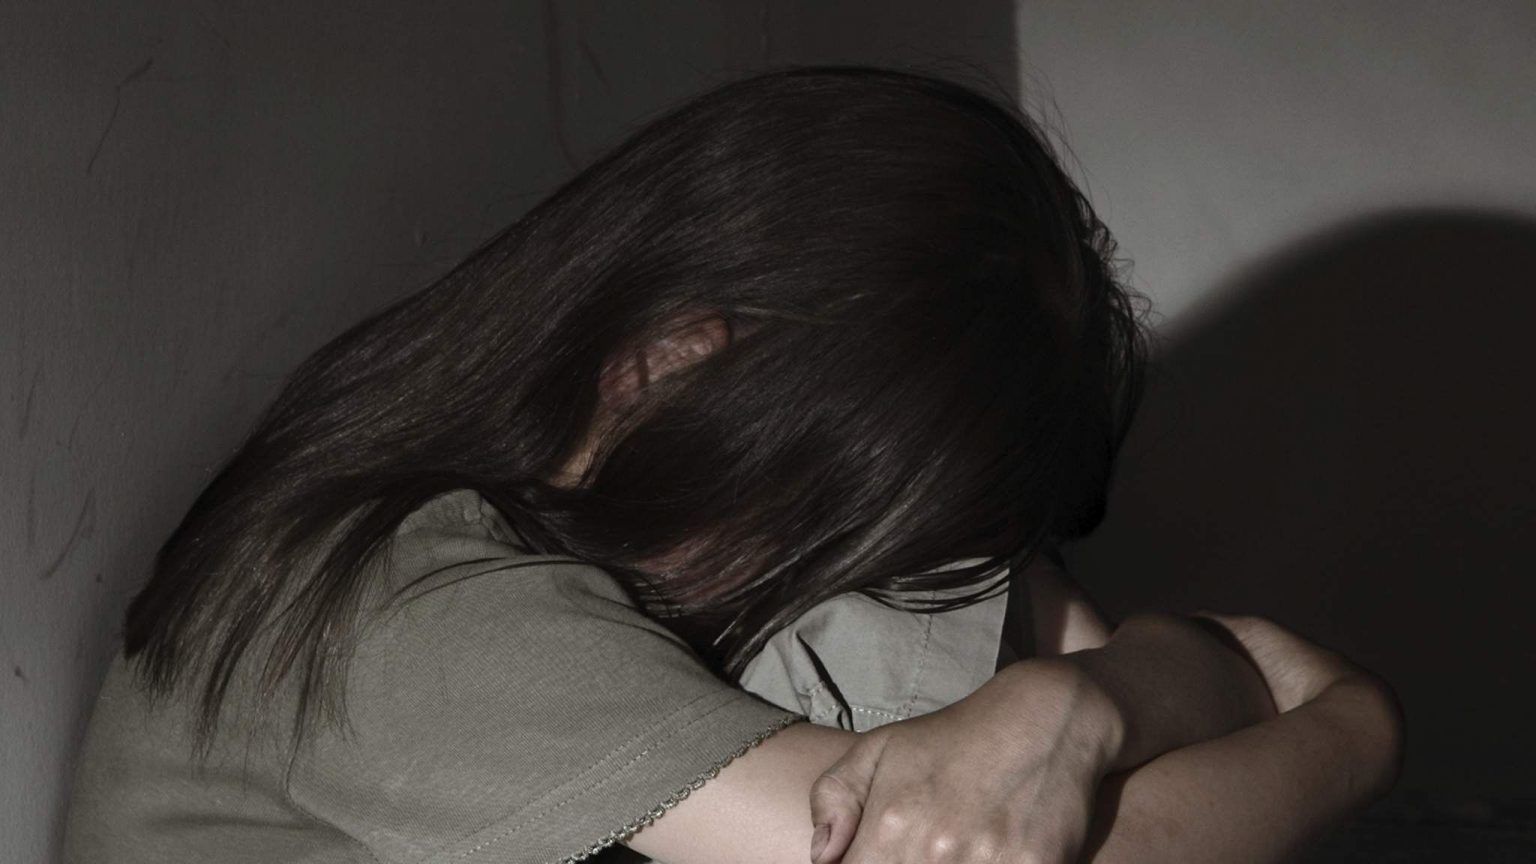 Беременна в 11 лет: на Закарпатье полиция завела дело по факту надругательства над малолетней девочкой